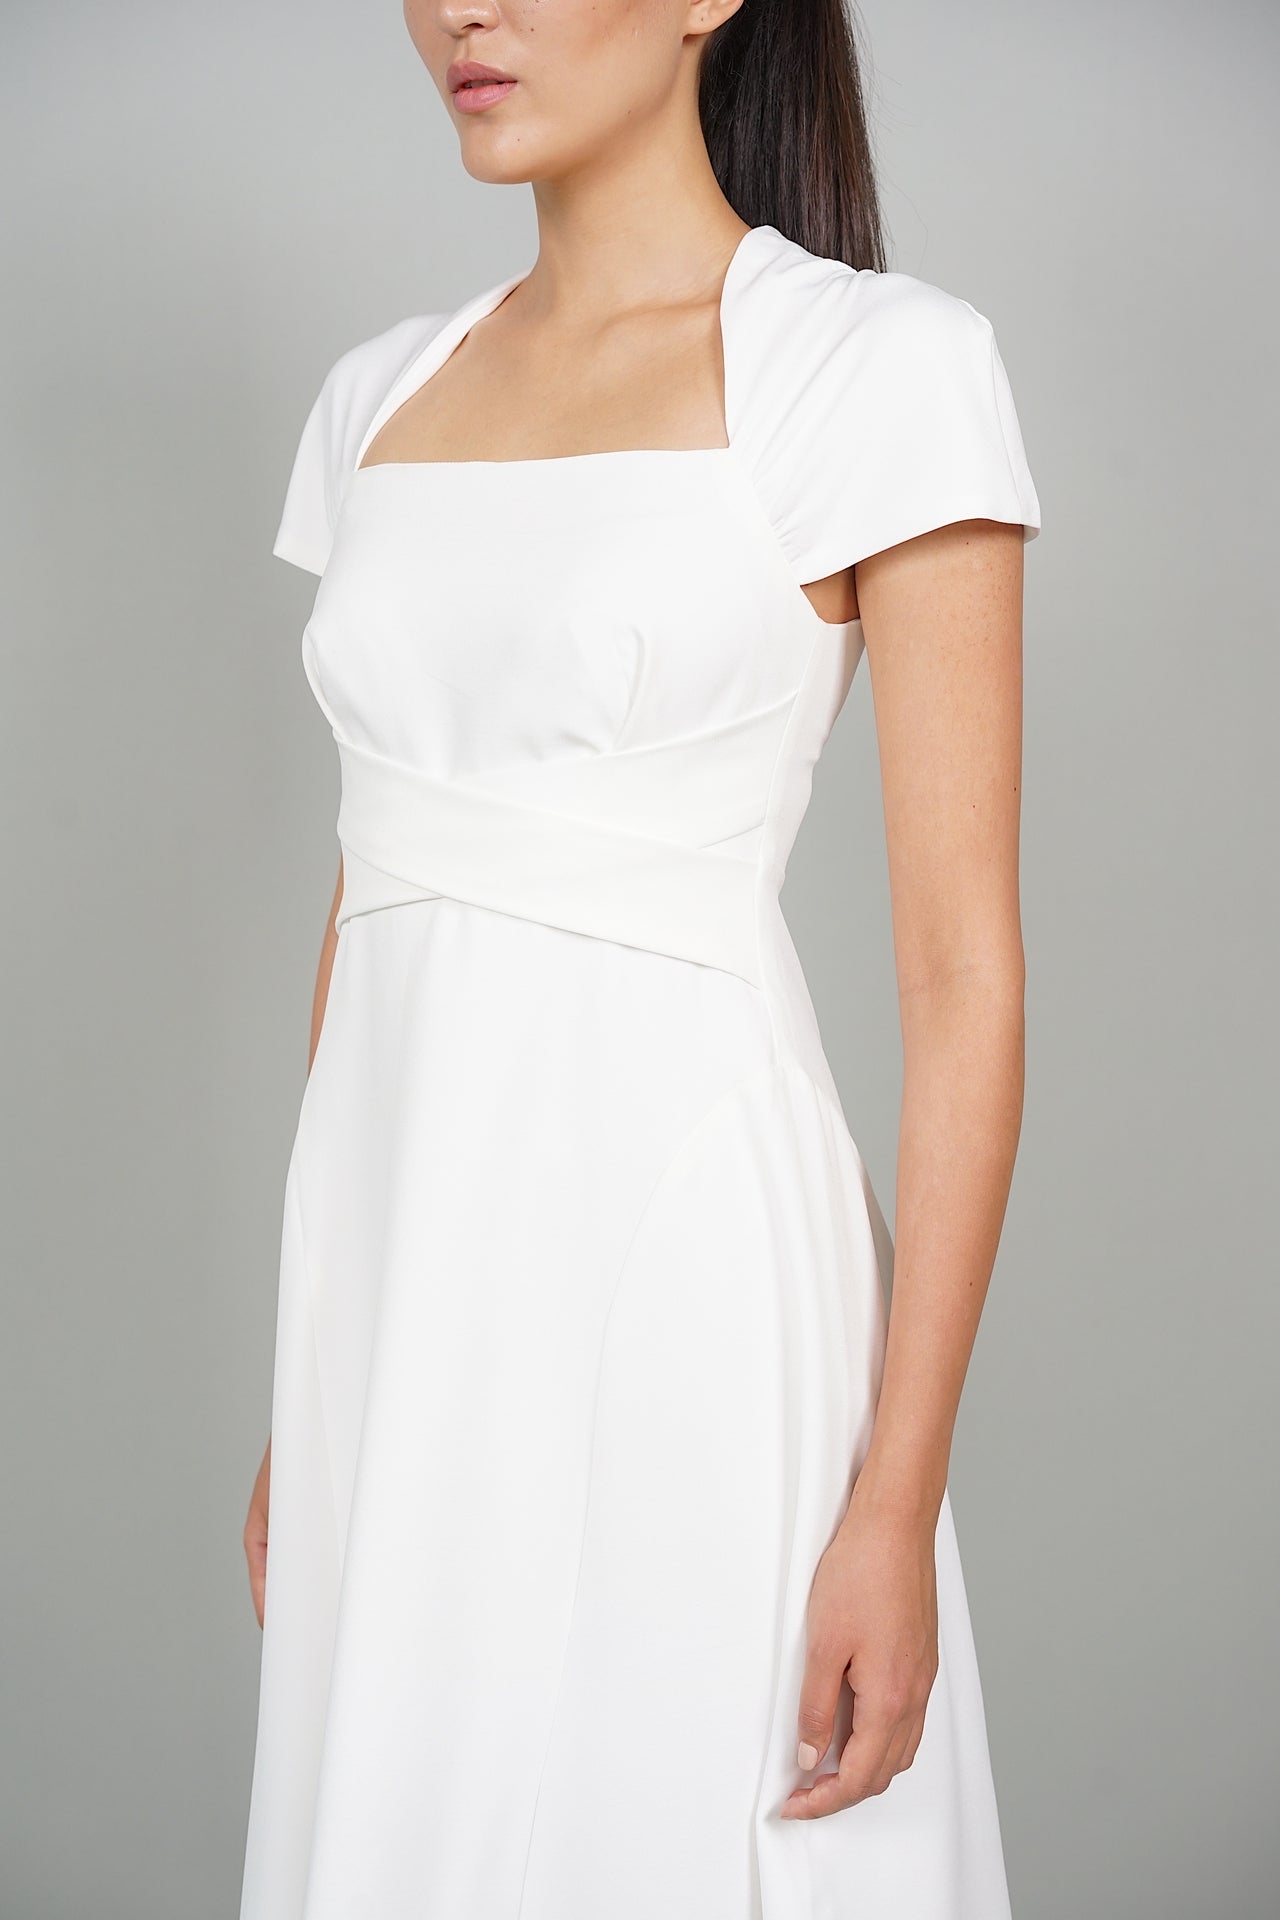 Tibi Midi Dress in White